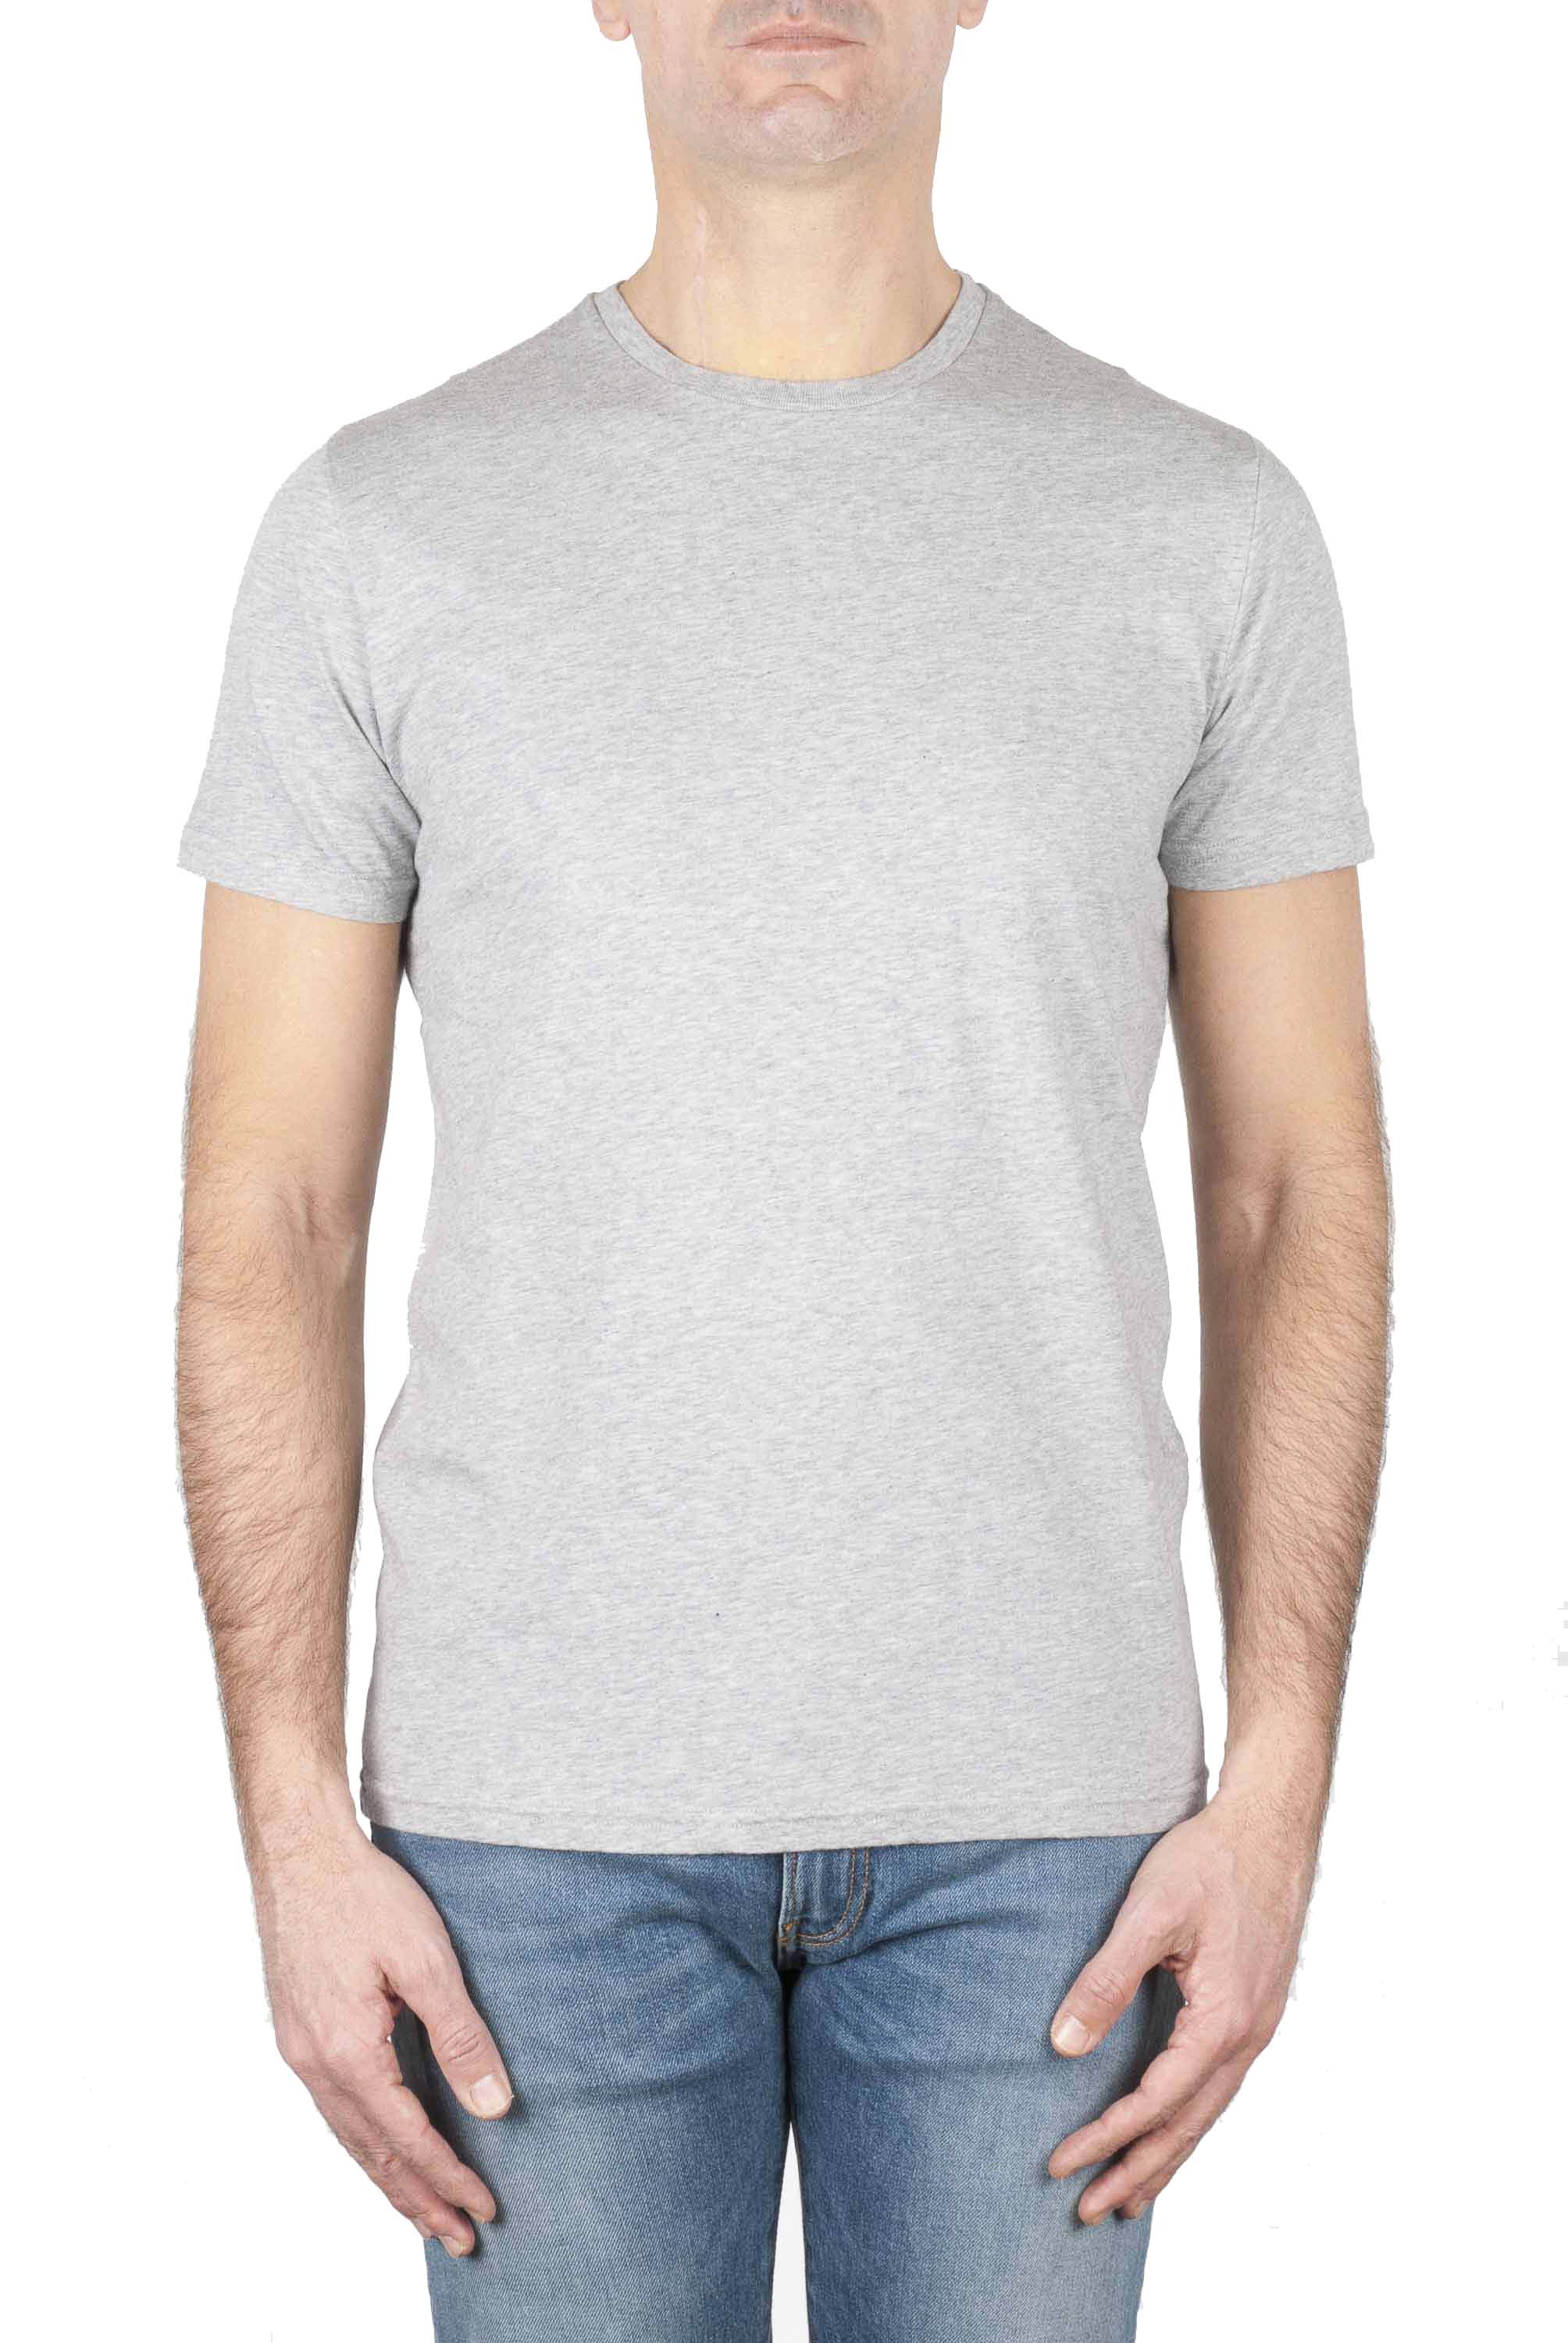 SBU 01747 T-shirt girocollo classica a maniche corte in cotone grigio melange 01